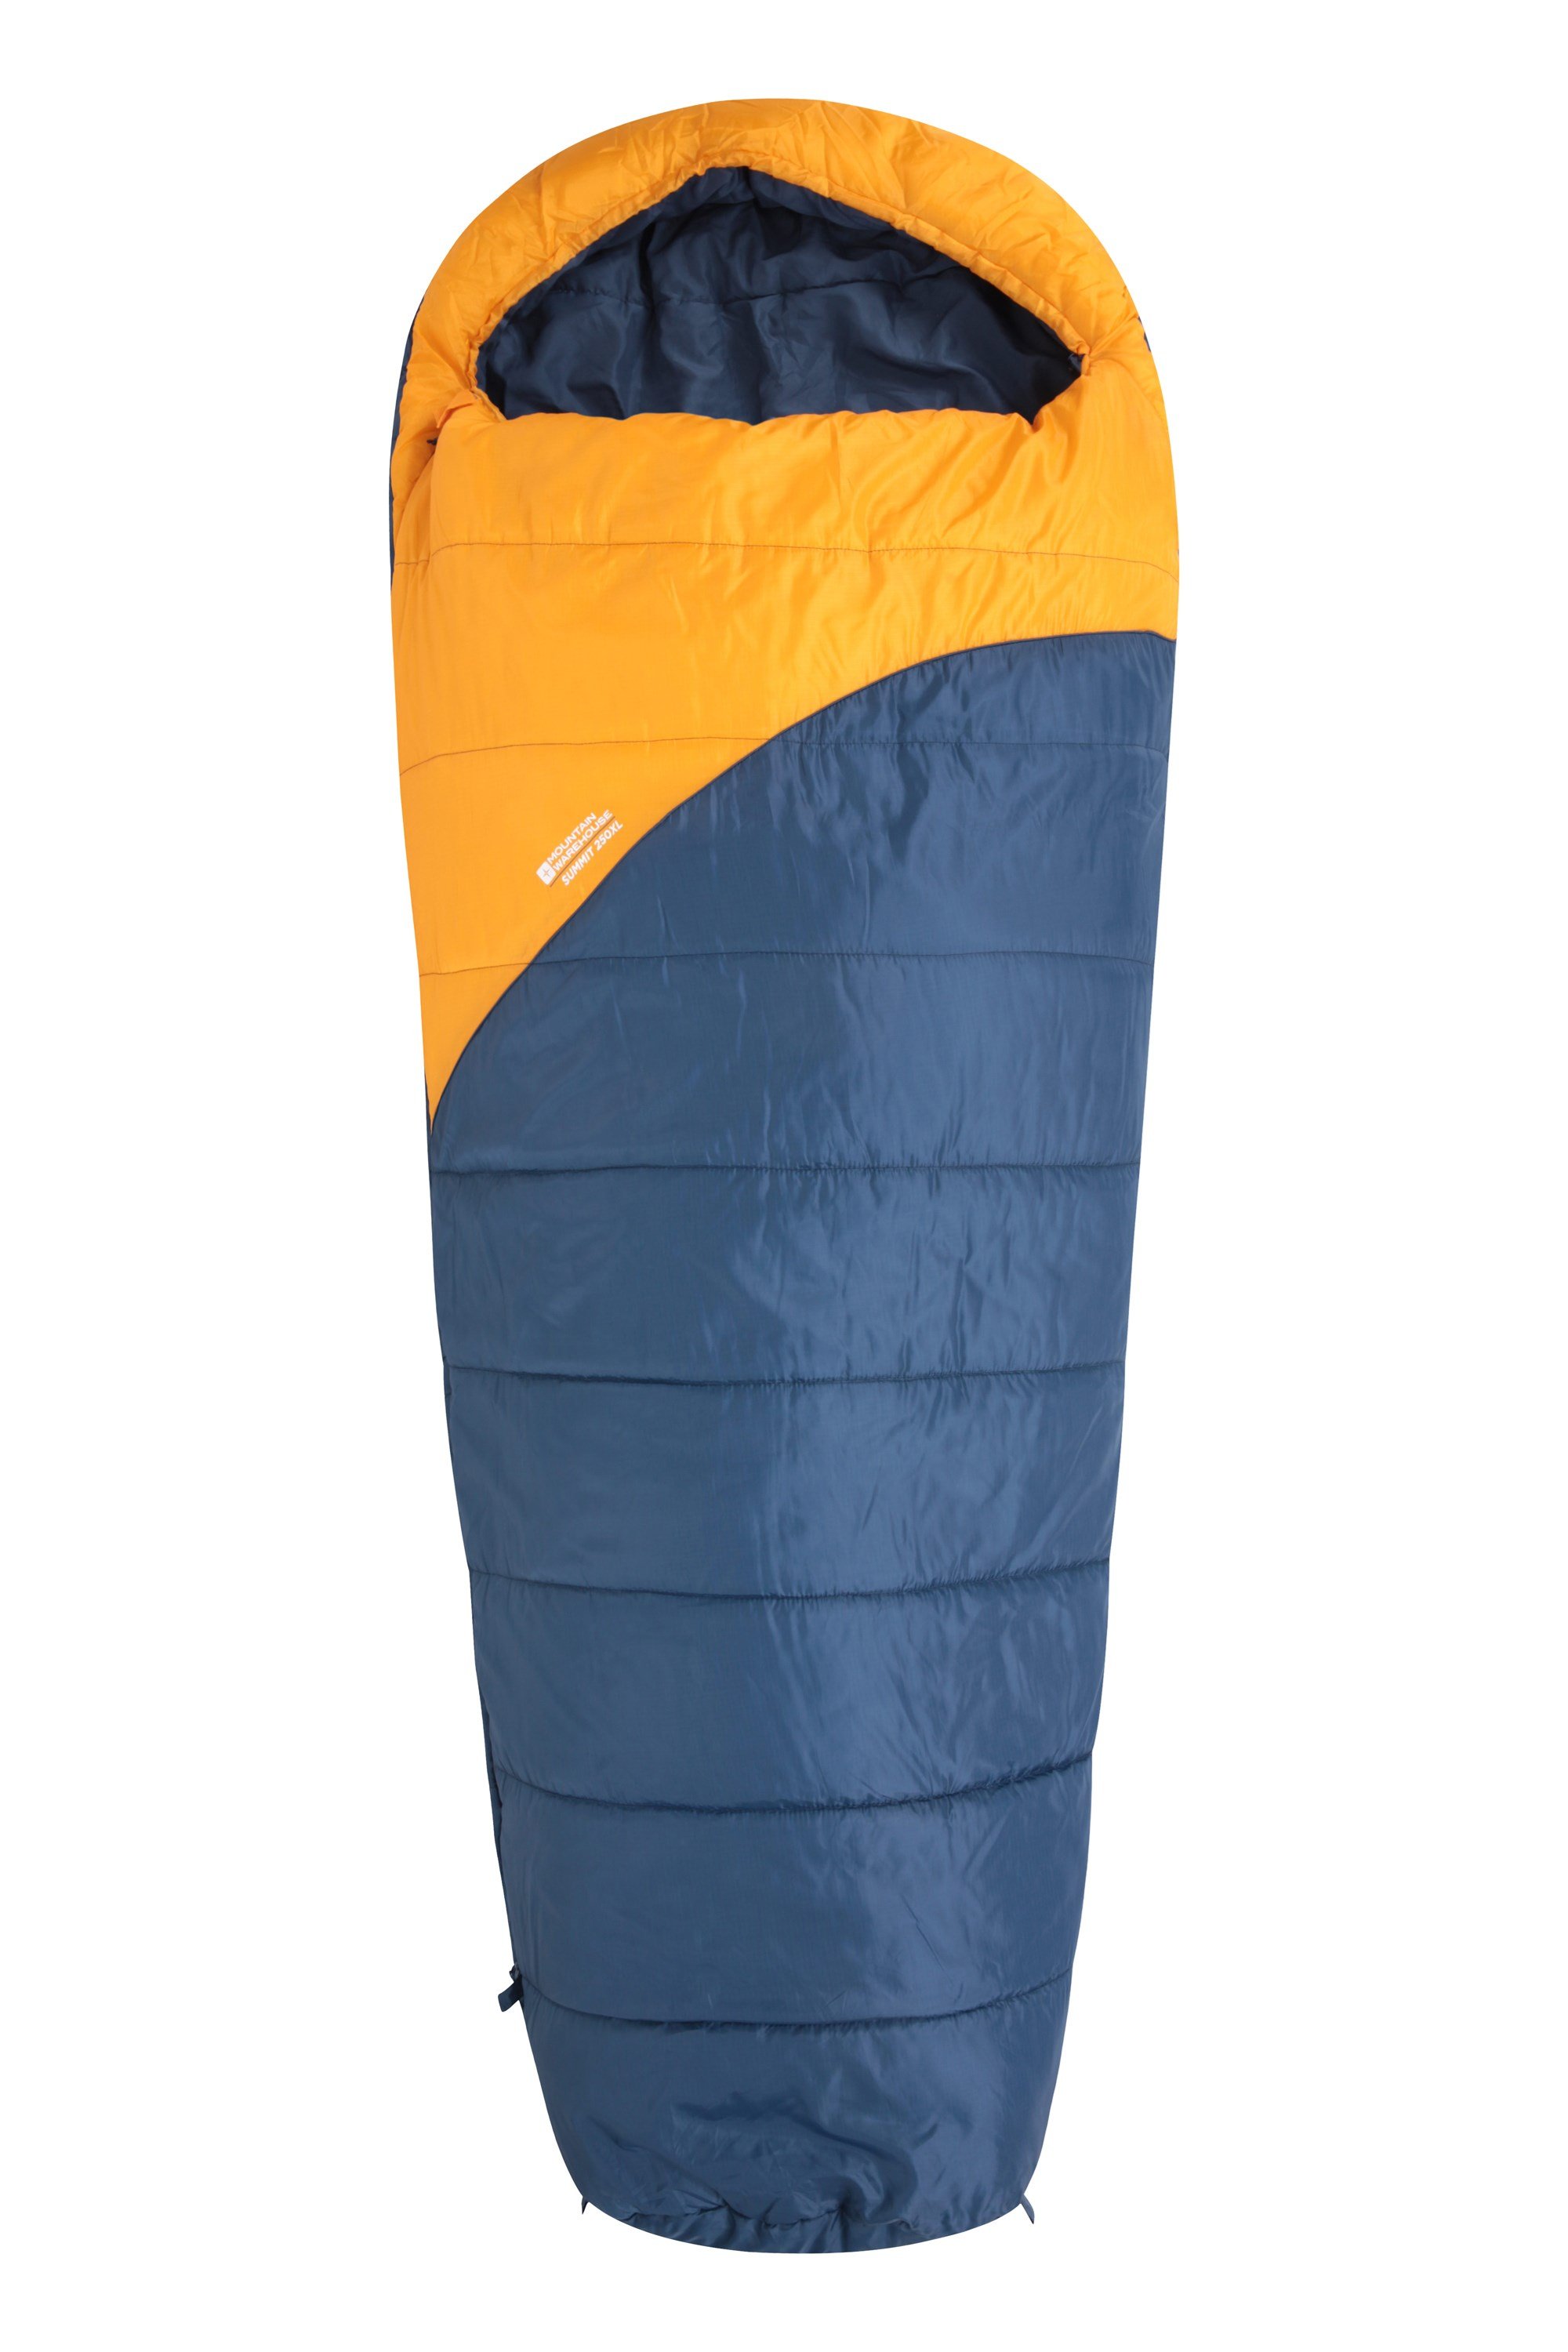 Summit 250 Sleeping Bag - XL - Yellow